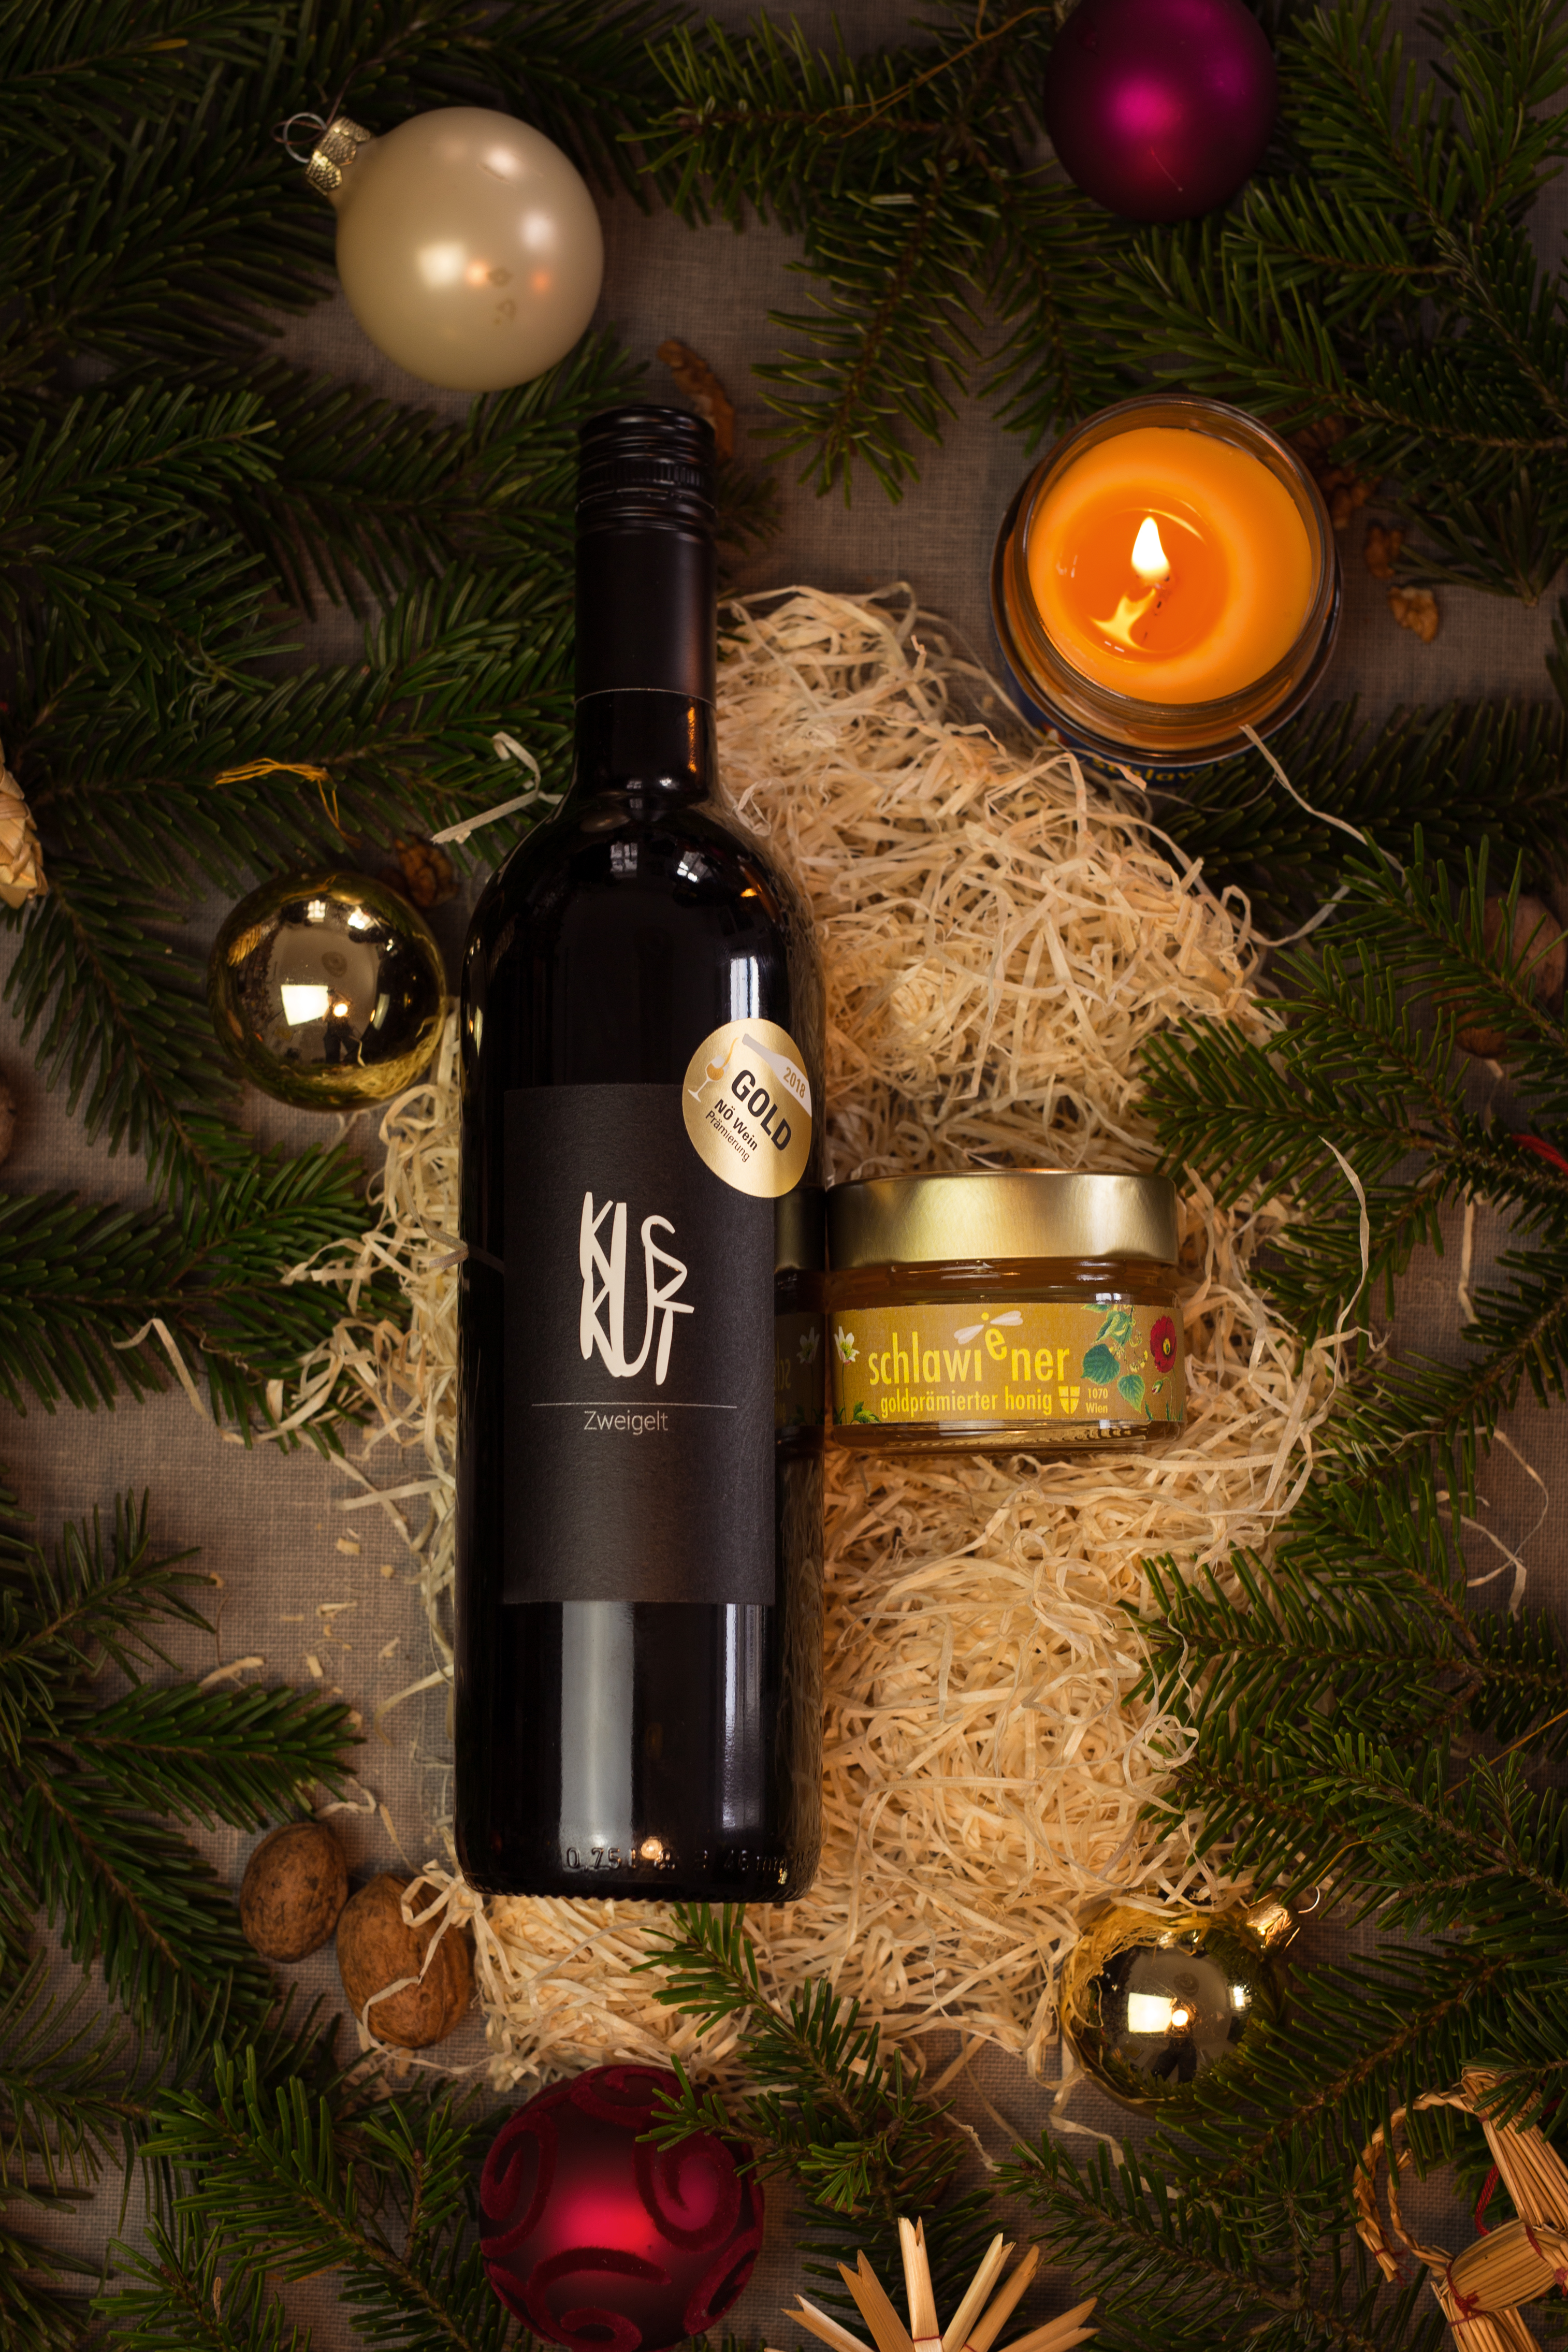 Das golden edition Weihnachtspaket mit KUSKUT Wein und schlawiener honig!